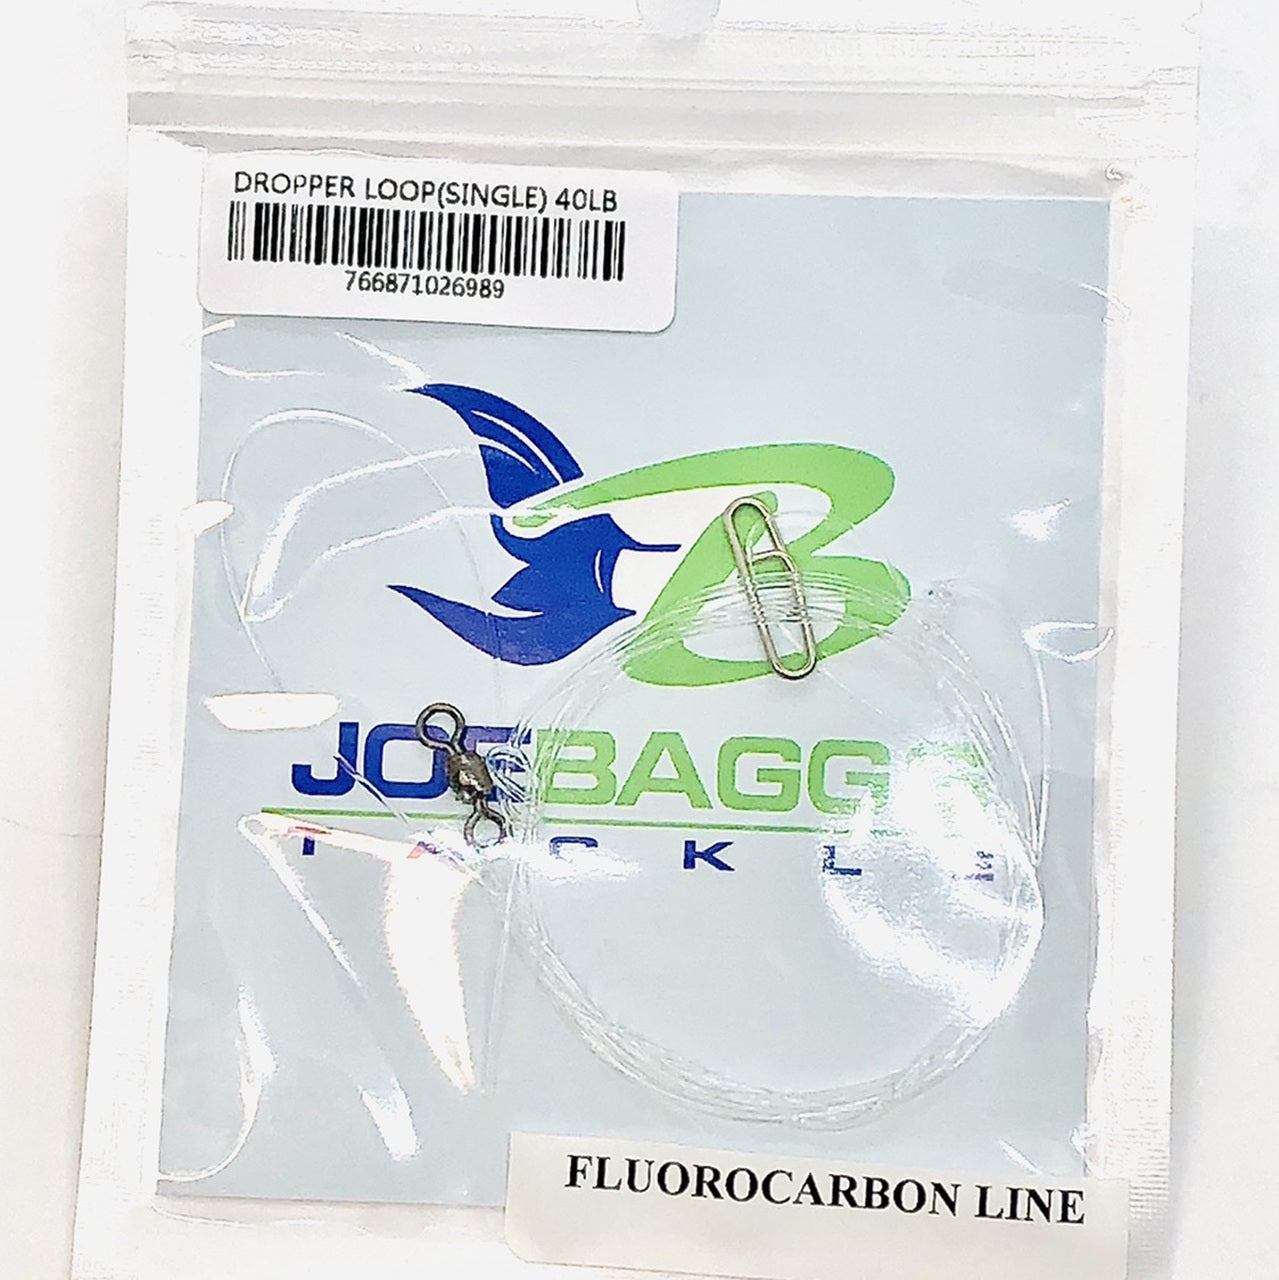 JoeBaggs - Dropper Loop (Single) Pre-Tied Rigs